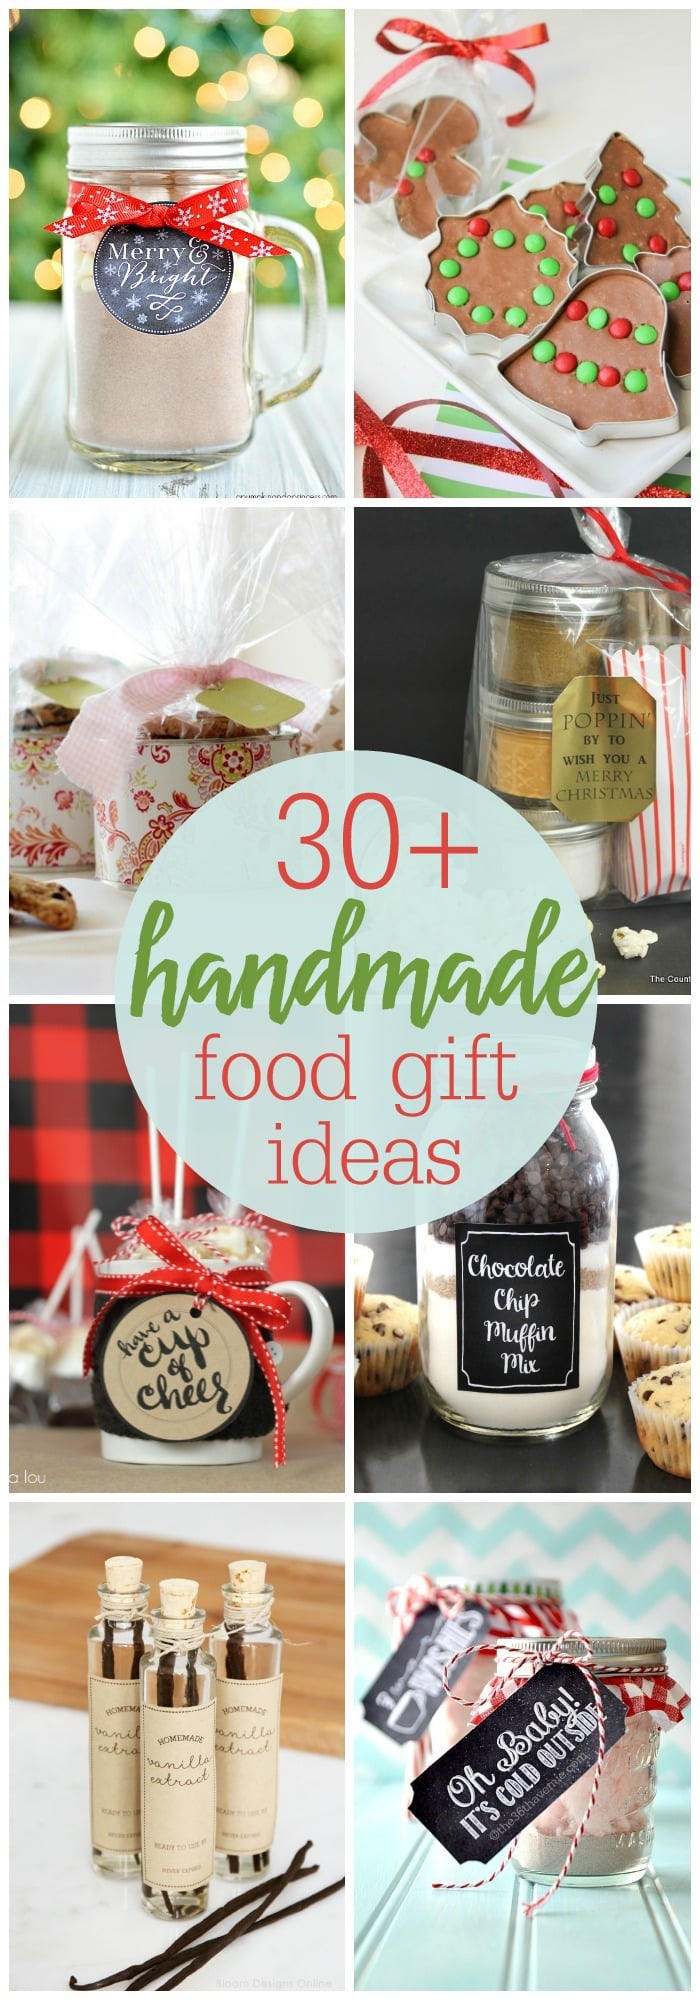 30+手工食品礼物创意-这么多简单，可爱和便宜的礼物创意，制作并送给朋友，家人和邻居。